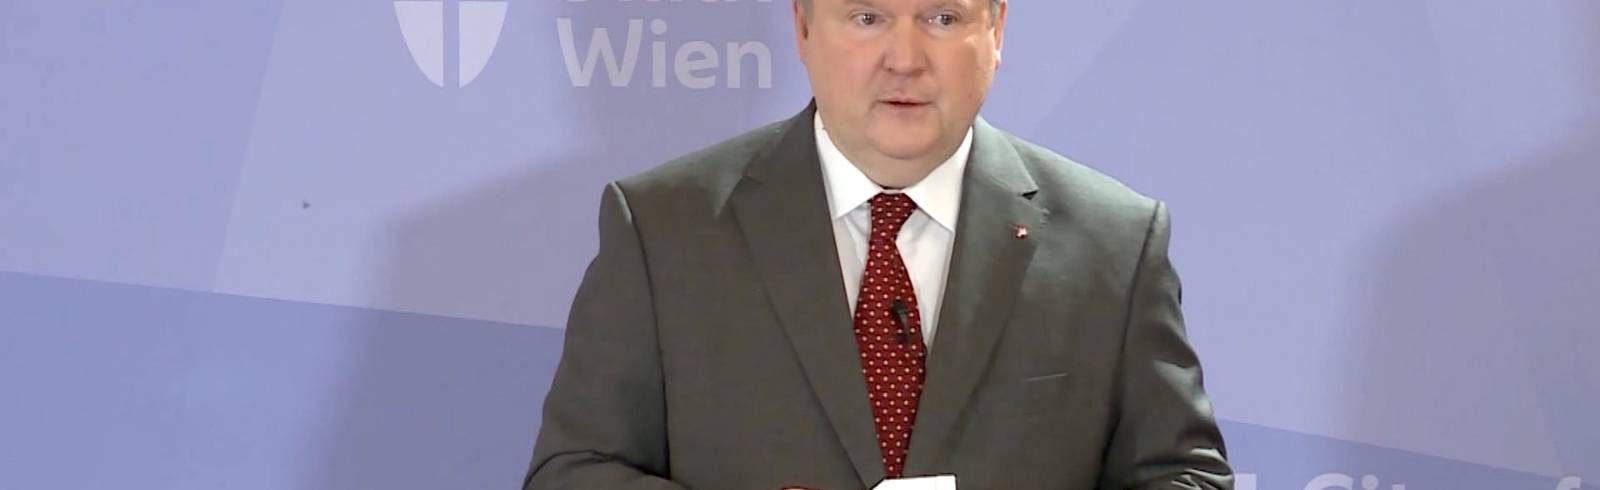 Landeshauptleutekonferenz: Wien übernimmt Vorsitz